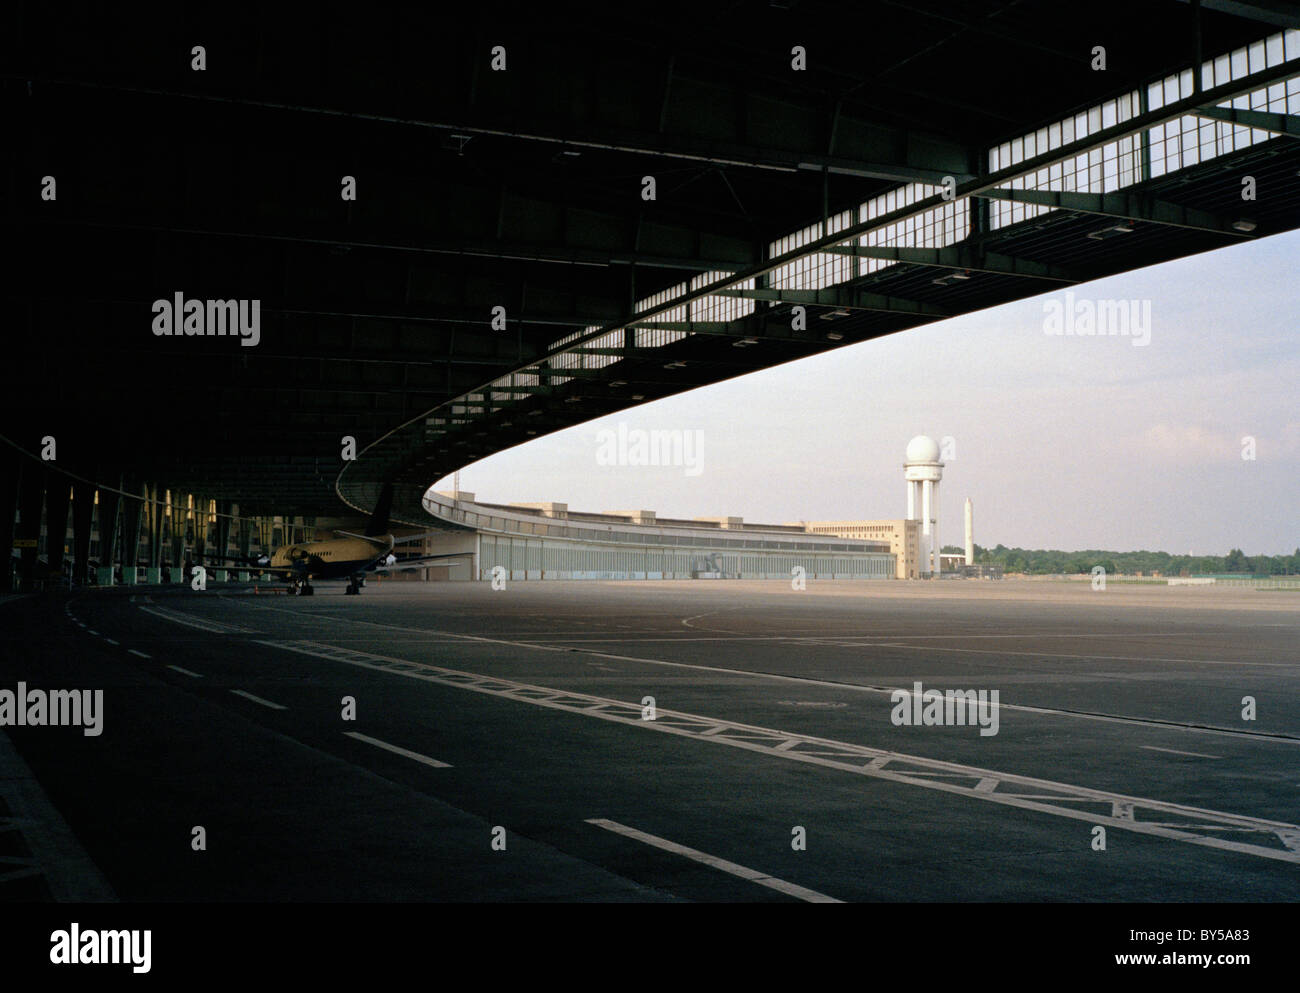 Dettaglio dell'edificio del terminal aeroporto Tempelhof di Berlino, Germania Foto Stock